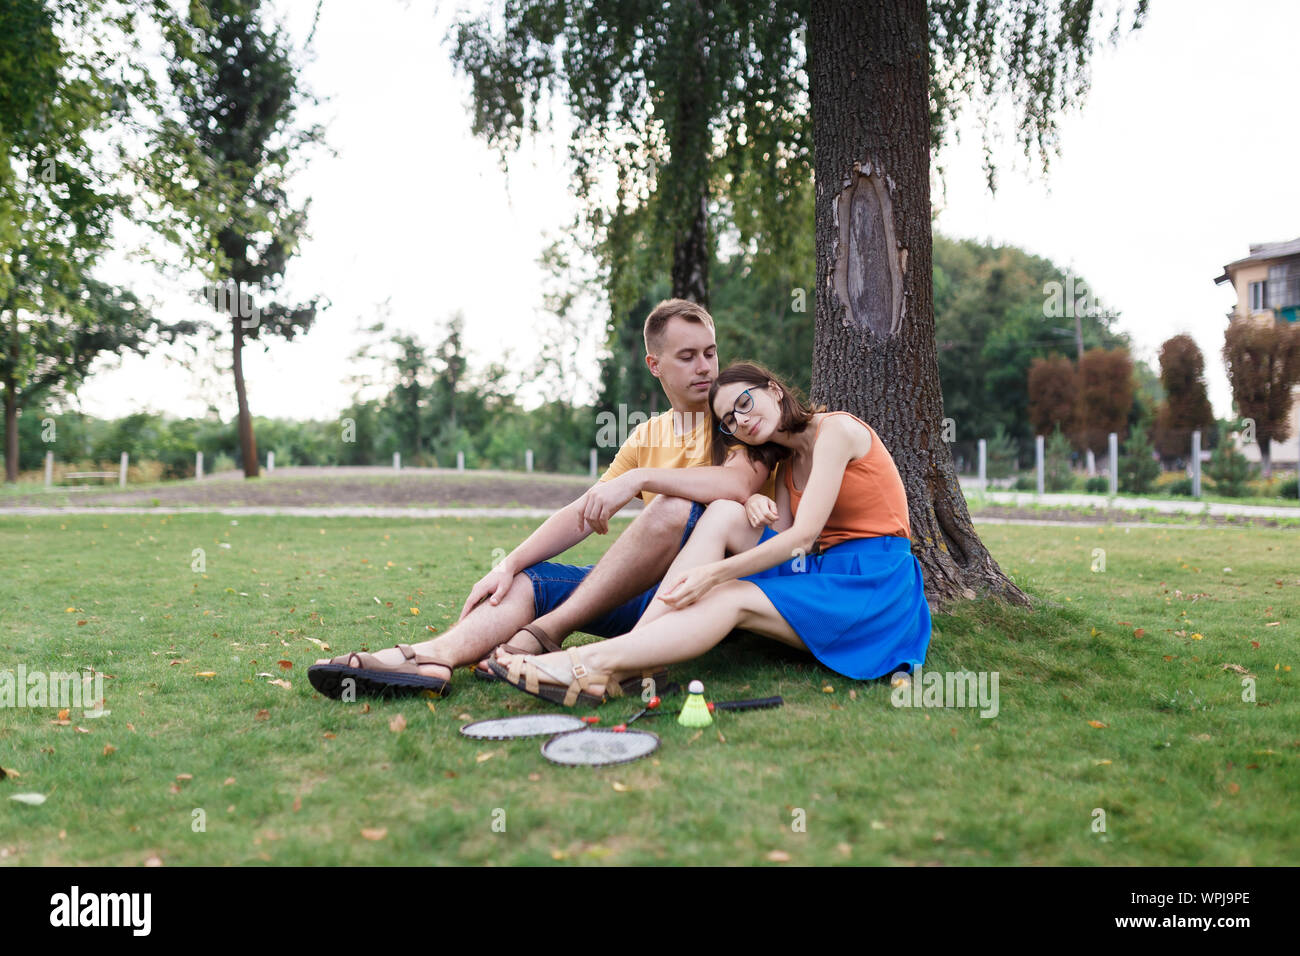 Pareja milenaria sentados en el césped después de jugar al bádminton en el parque Foto de stock